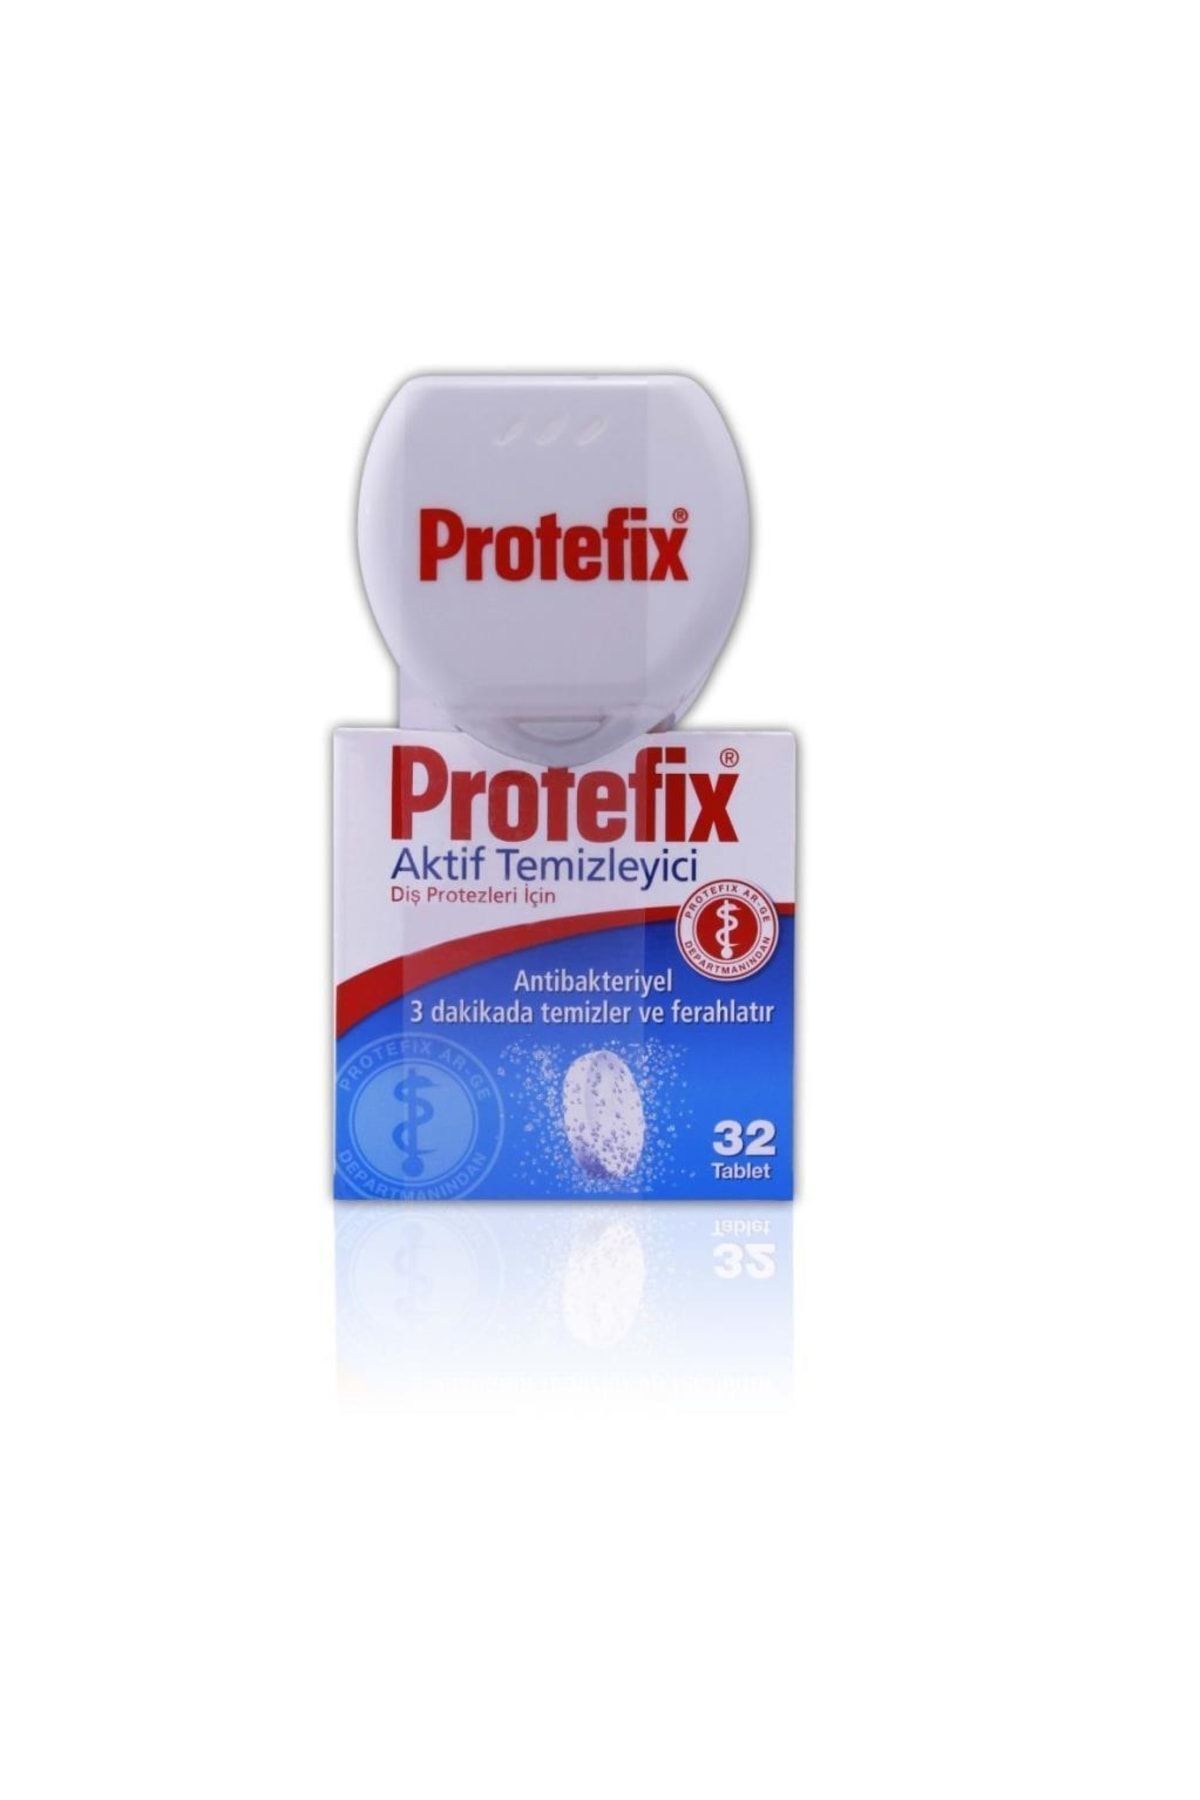 Protefix Aktif Temizleyici Diş Protezleri Için 32 Tablet